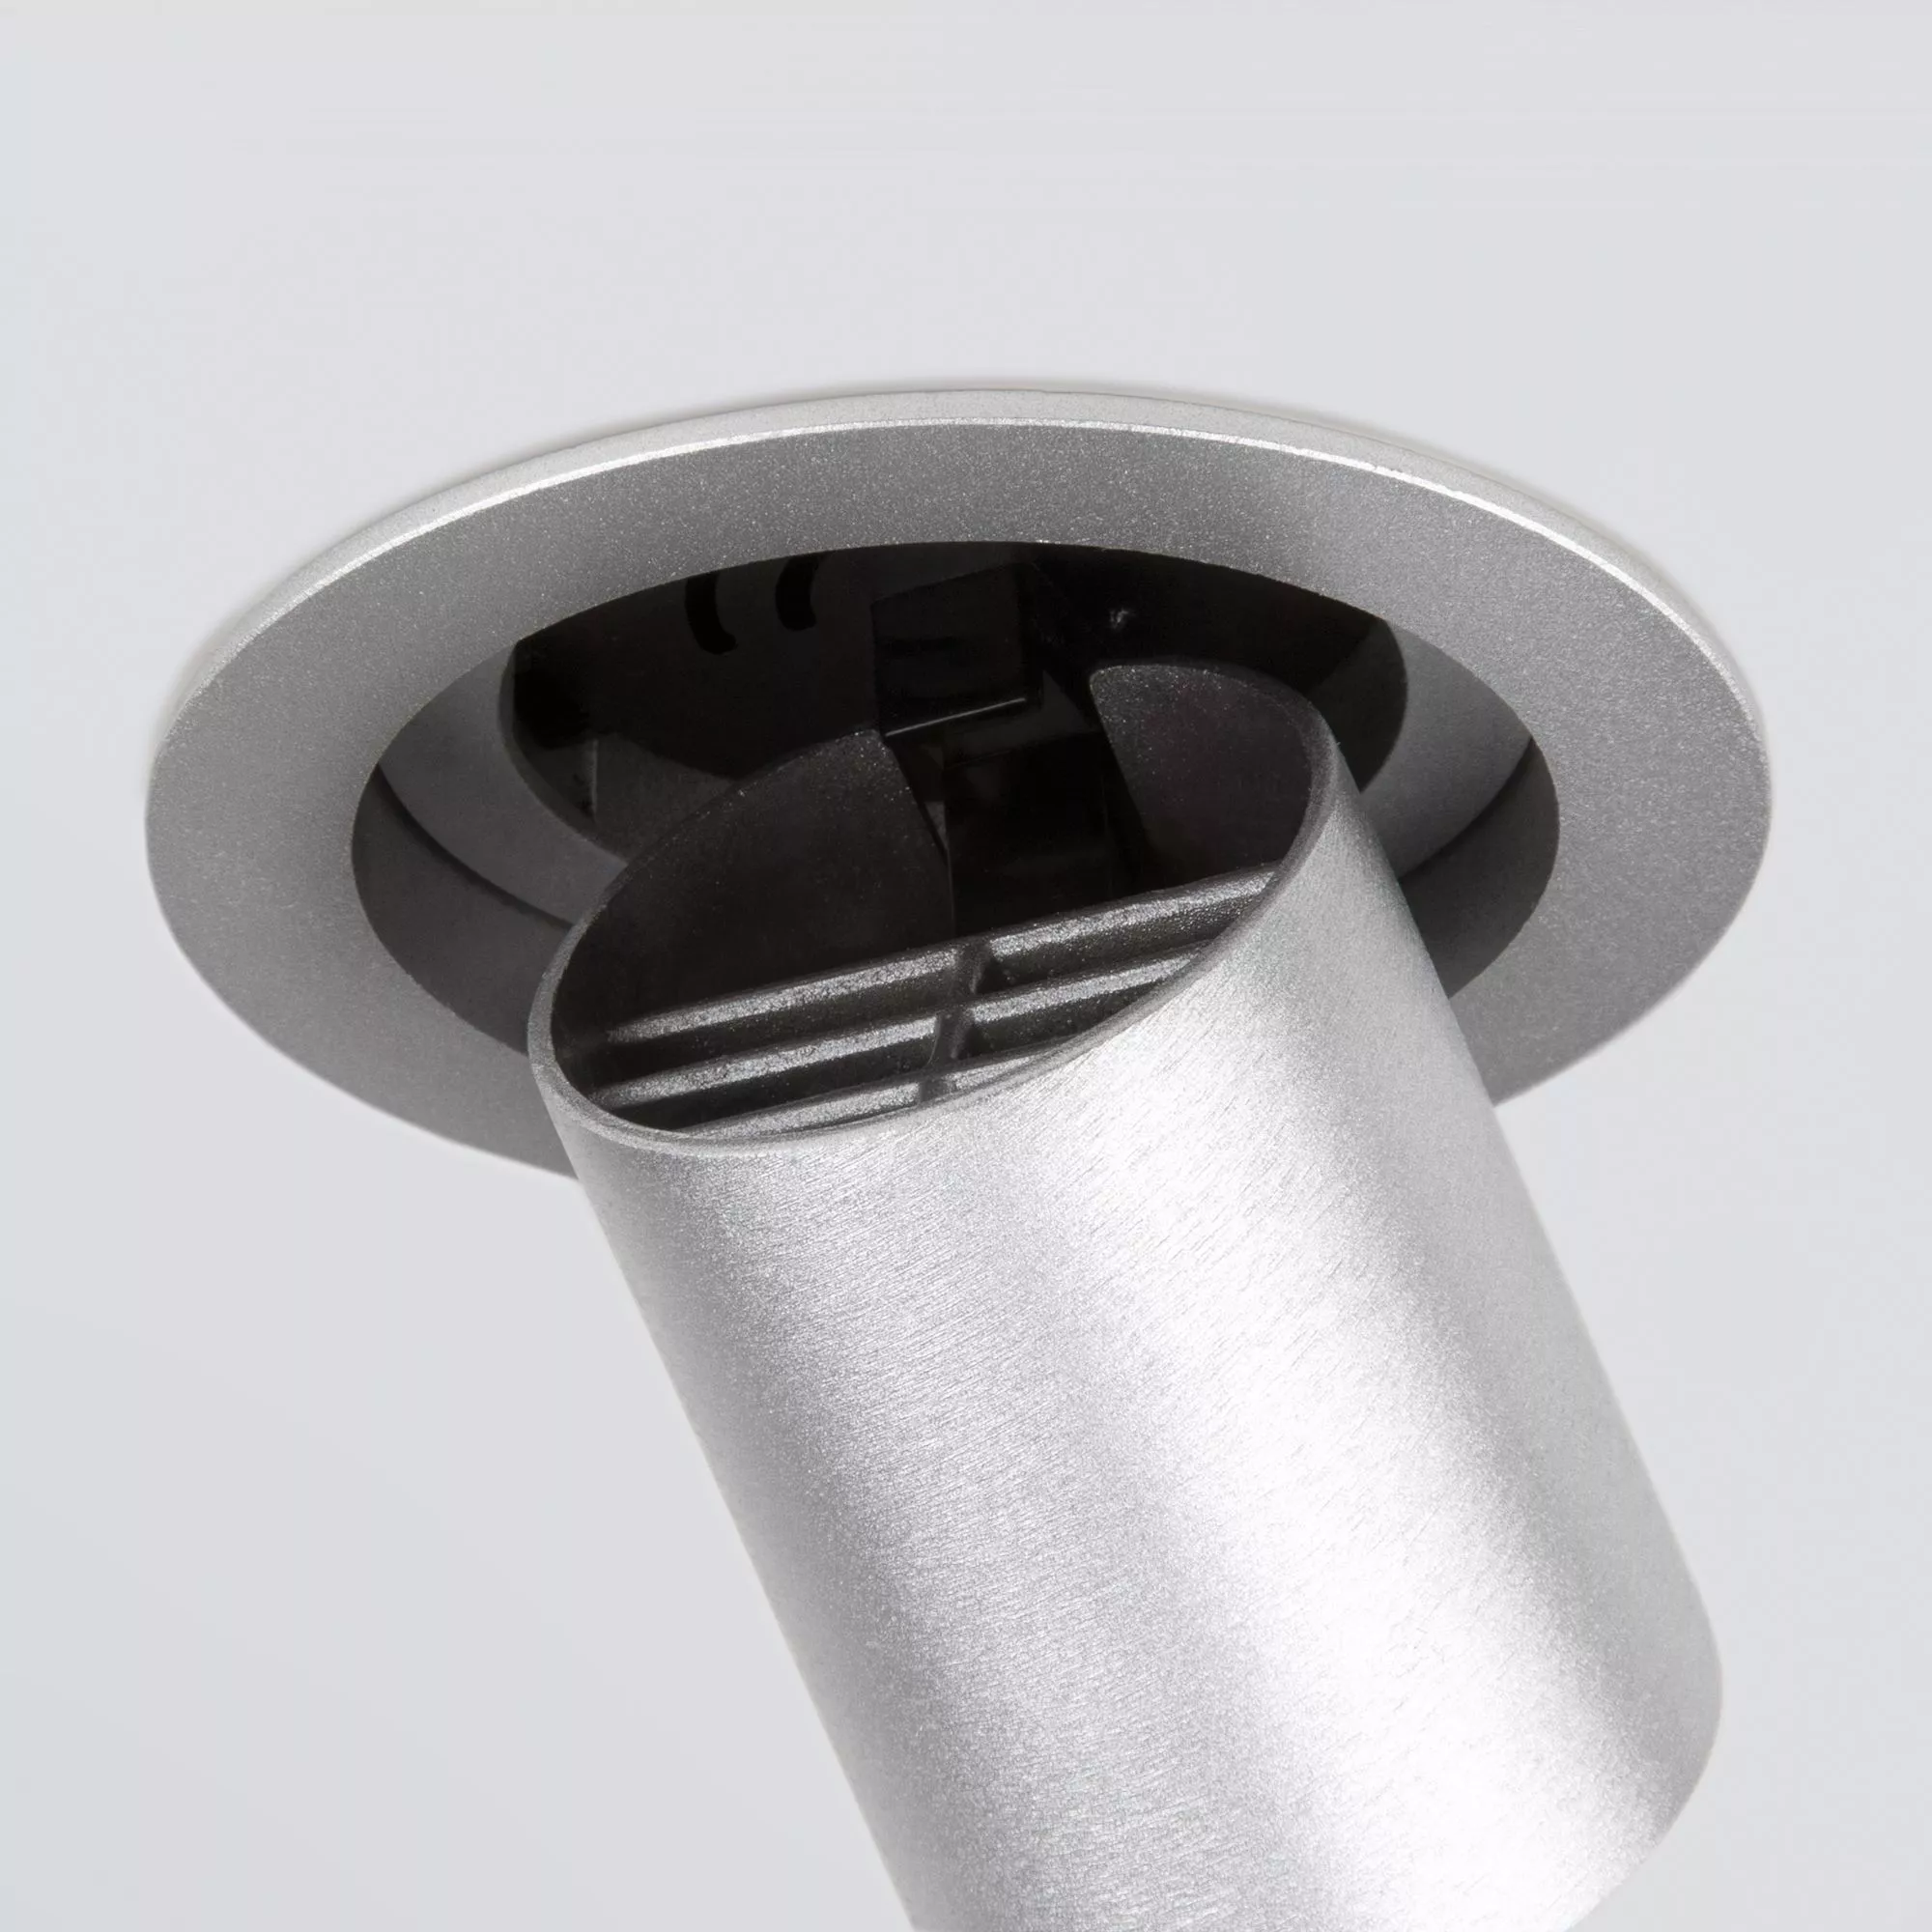 Точечный встраиваемый светильник Elektrostandard Pispa 9917 LED Серебро